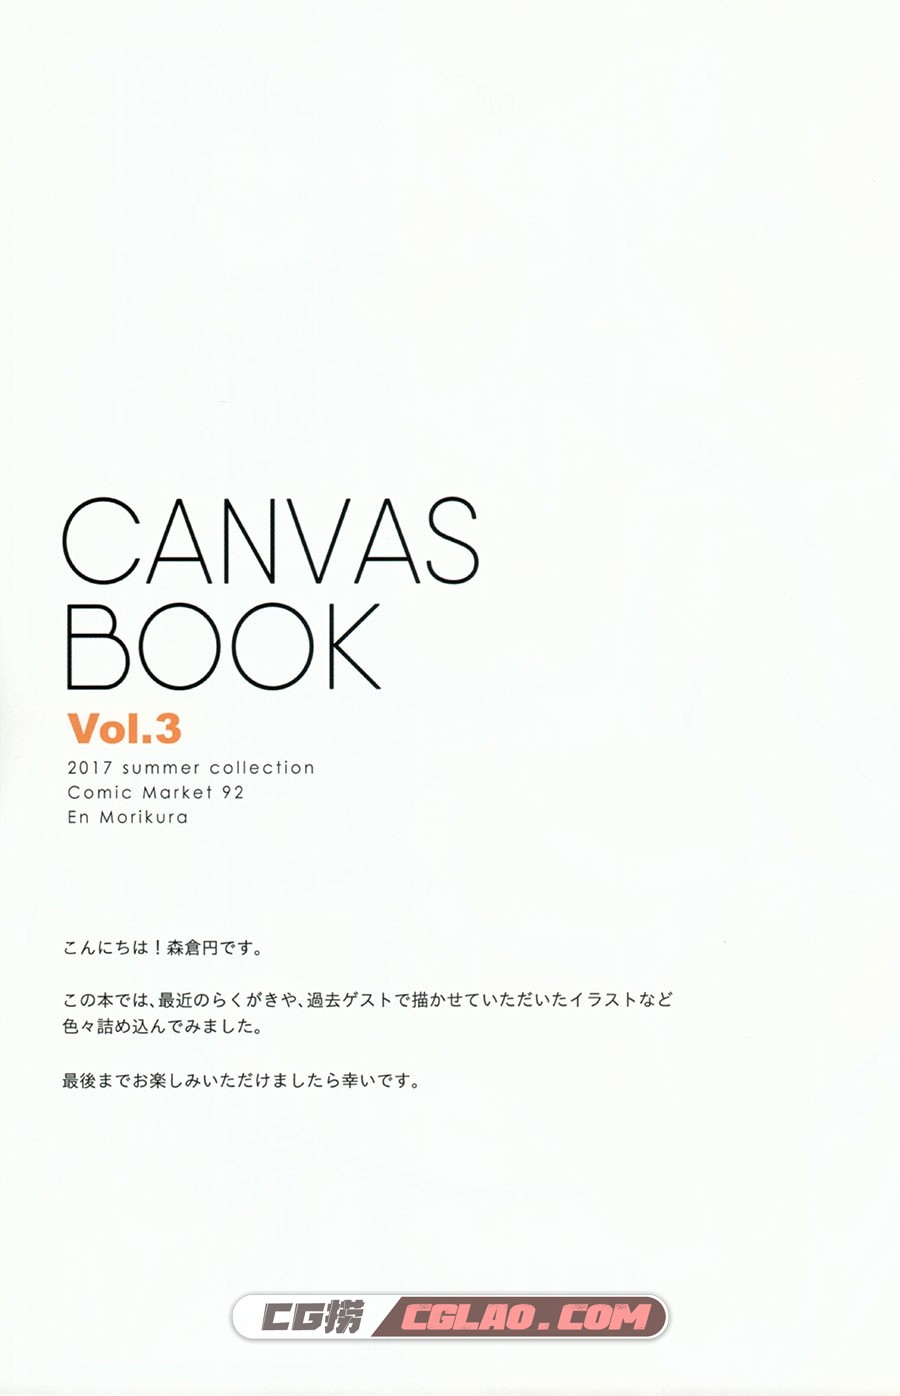 カンバス 森倉円 CANVAS BOOK 3 同人插画画集百度网盘下载,301.jpg